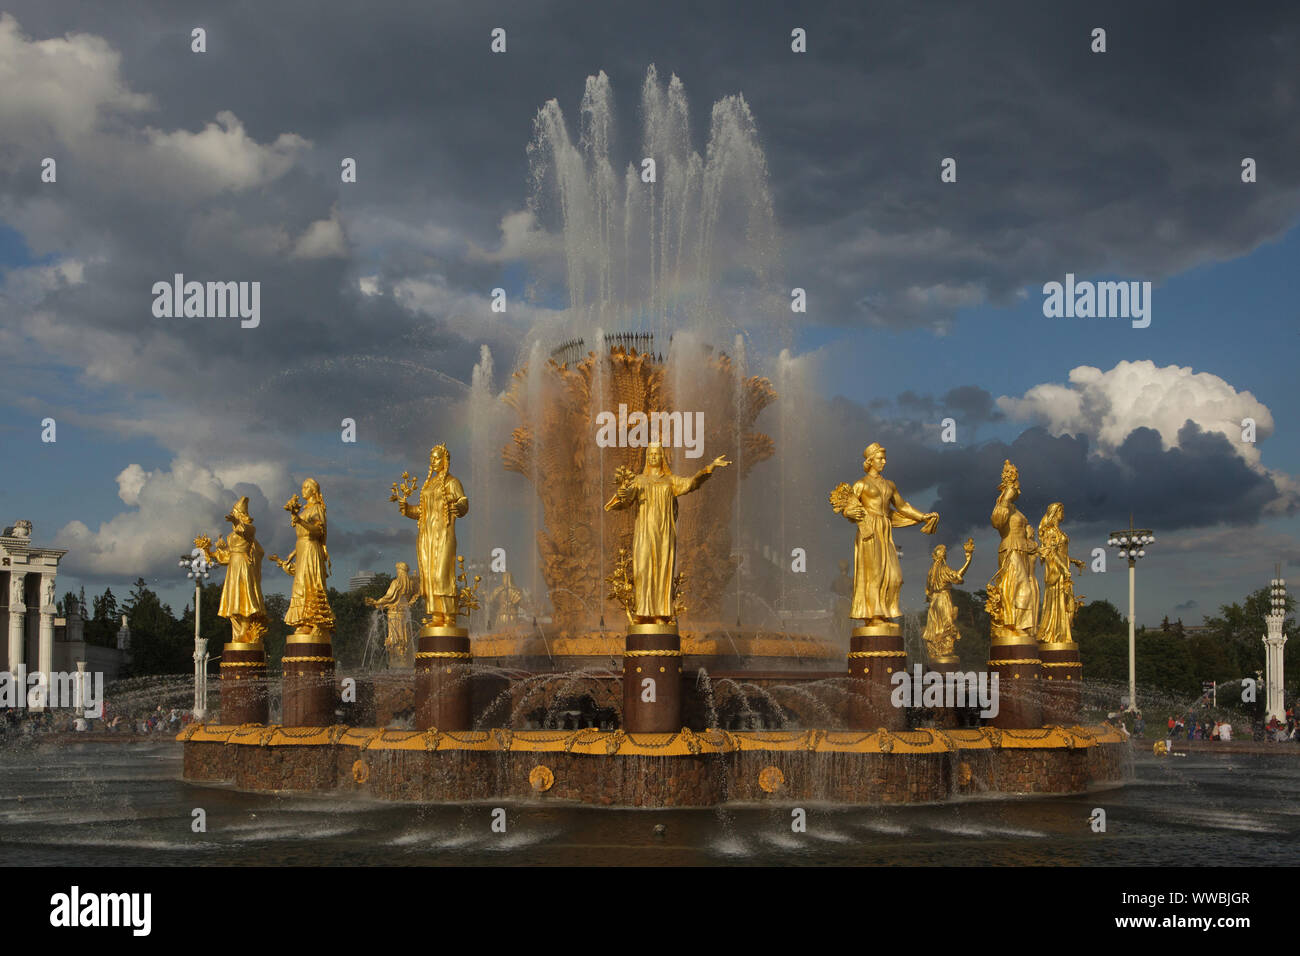 L'amitié des nations (l'Amitié des Peuples) Fontaine sur la place principale dans le centre d'expositions VDNH (exposition de réalisations de l'Économie nationale) à Moscou, Russie. La fontaine conçu par l'architecte soviétique Konstantin Topuridze décoré de statues de la doré 16 nations de l'Union soviétique par les sculpteurs soviétique Zinaida Bazehenova, Alexey Teneta, 152 Chaykov, Zoya Ryleyeva et autres a été construit en 1954. La fontaine est également connu comme la Gerbe d'or. Banque D'Images